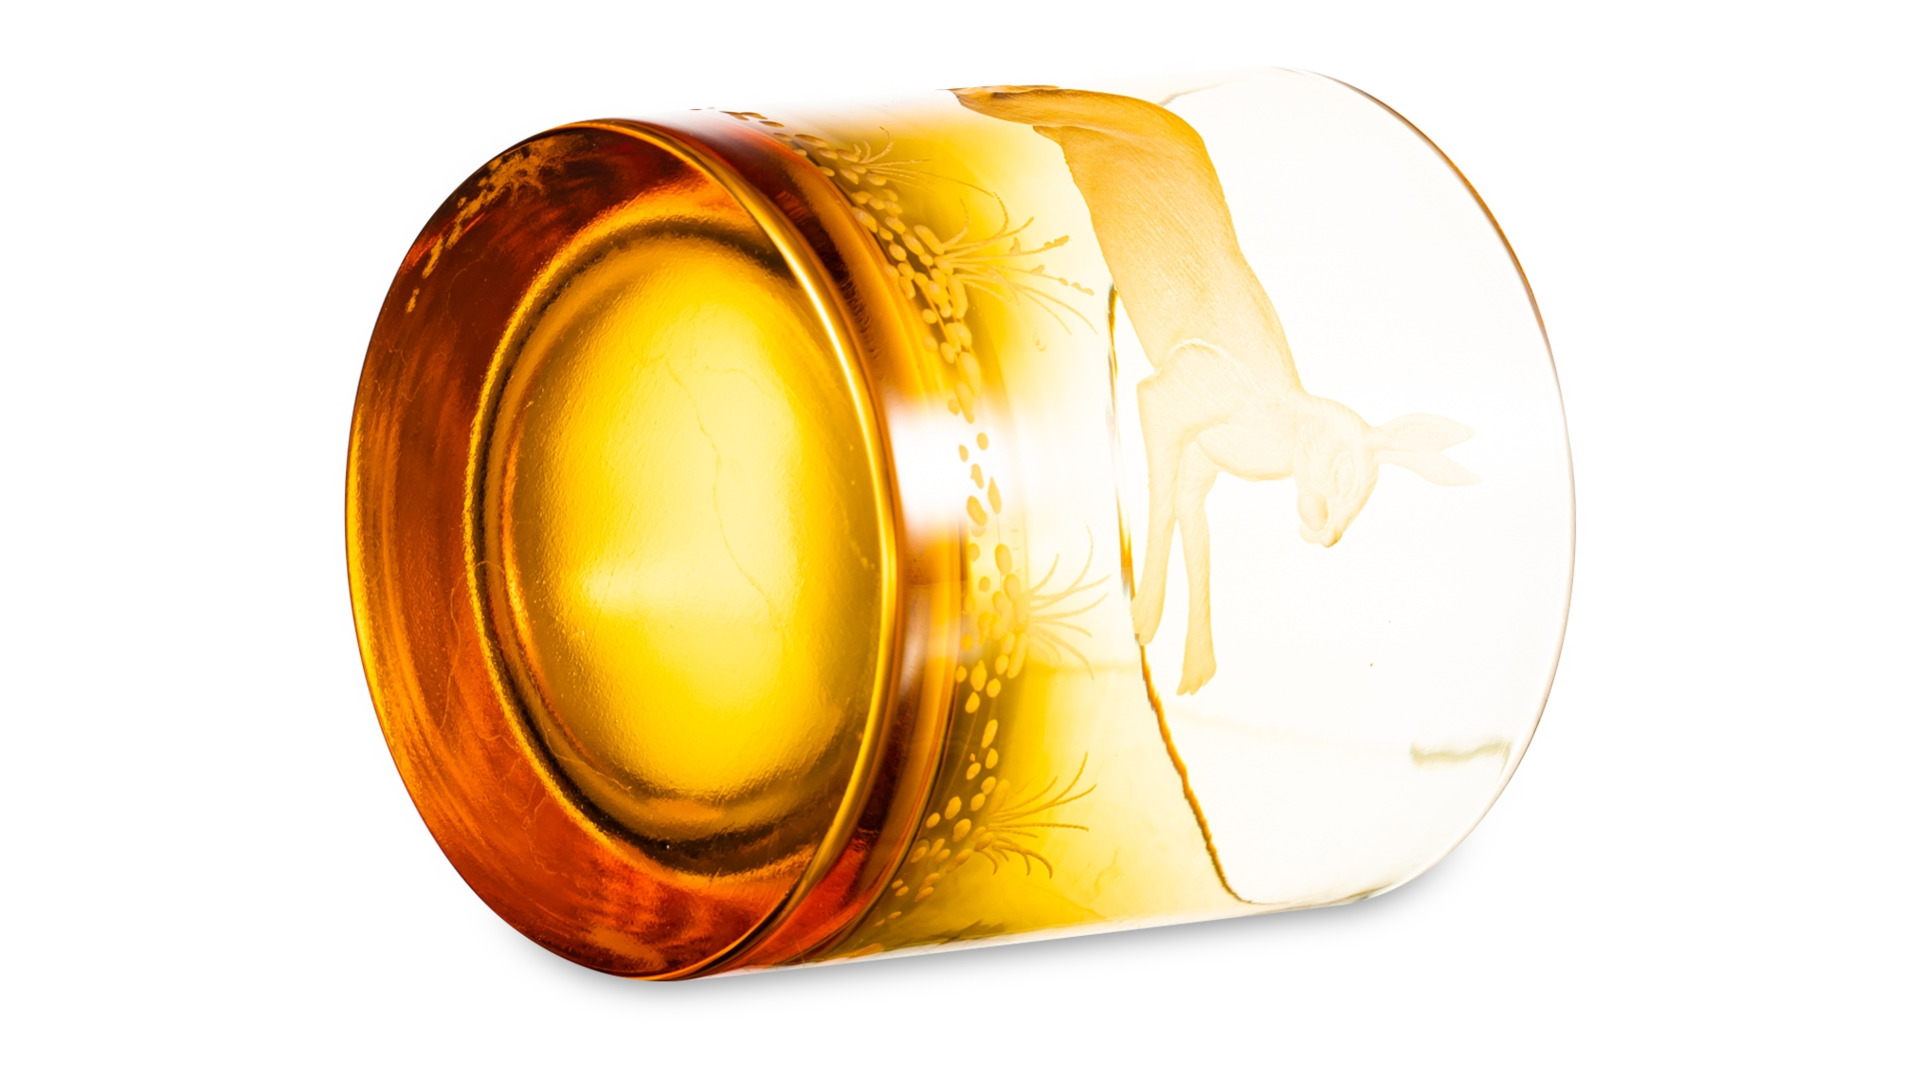 Набор стаканов для виски в футляре ГХЗ Зайцы 350 мл, янтарный, хрусталь